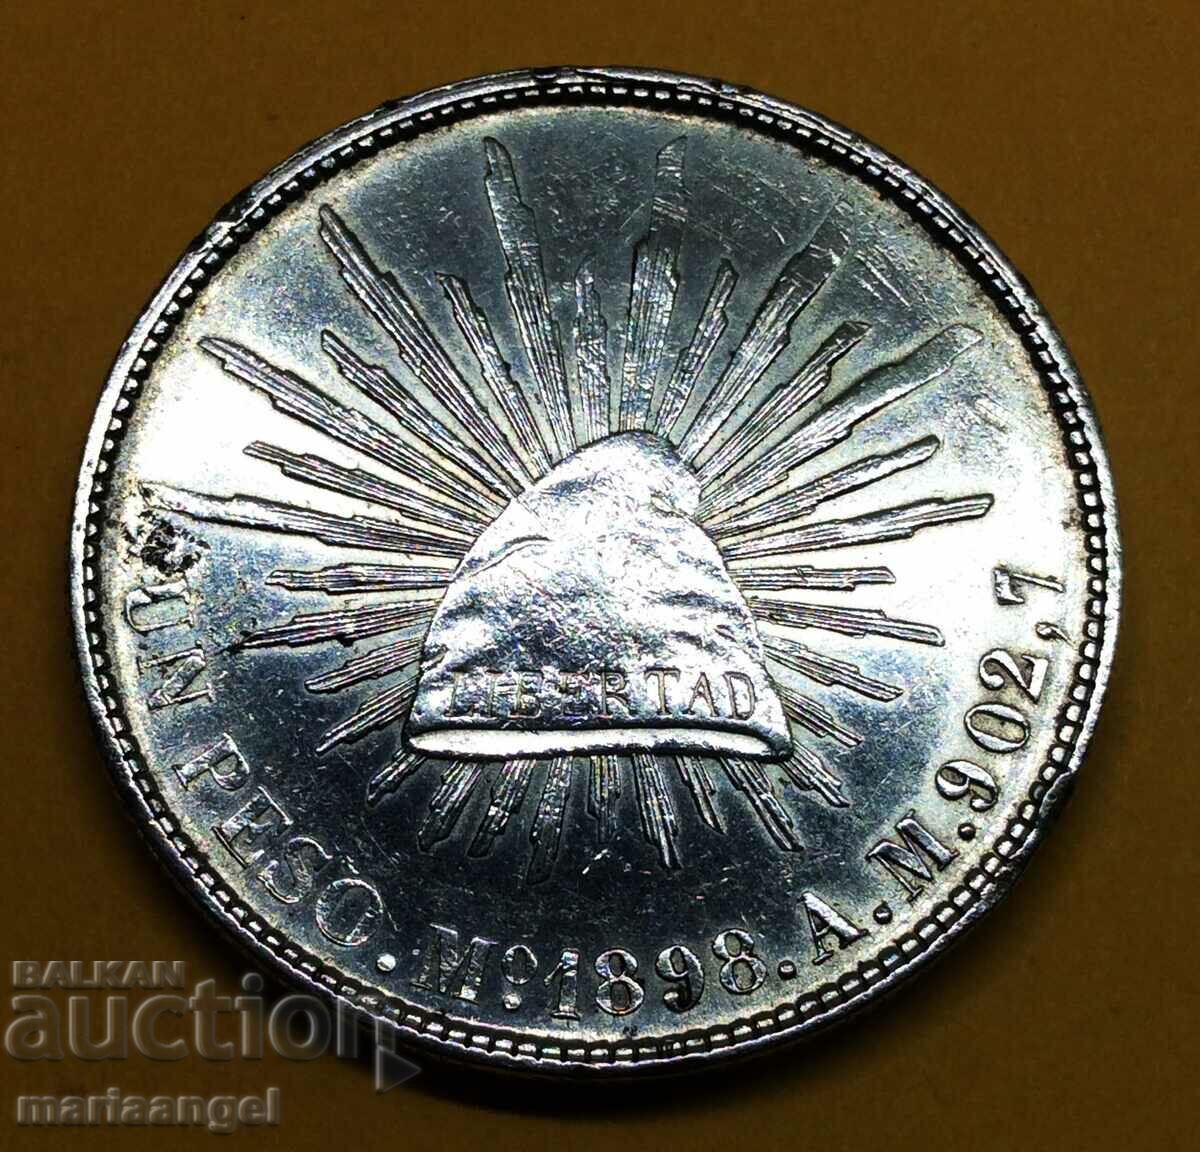 Mexico 1 peso 1898 26.95g silver